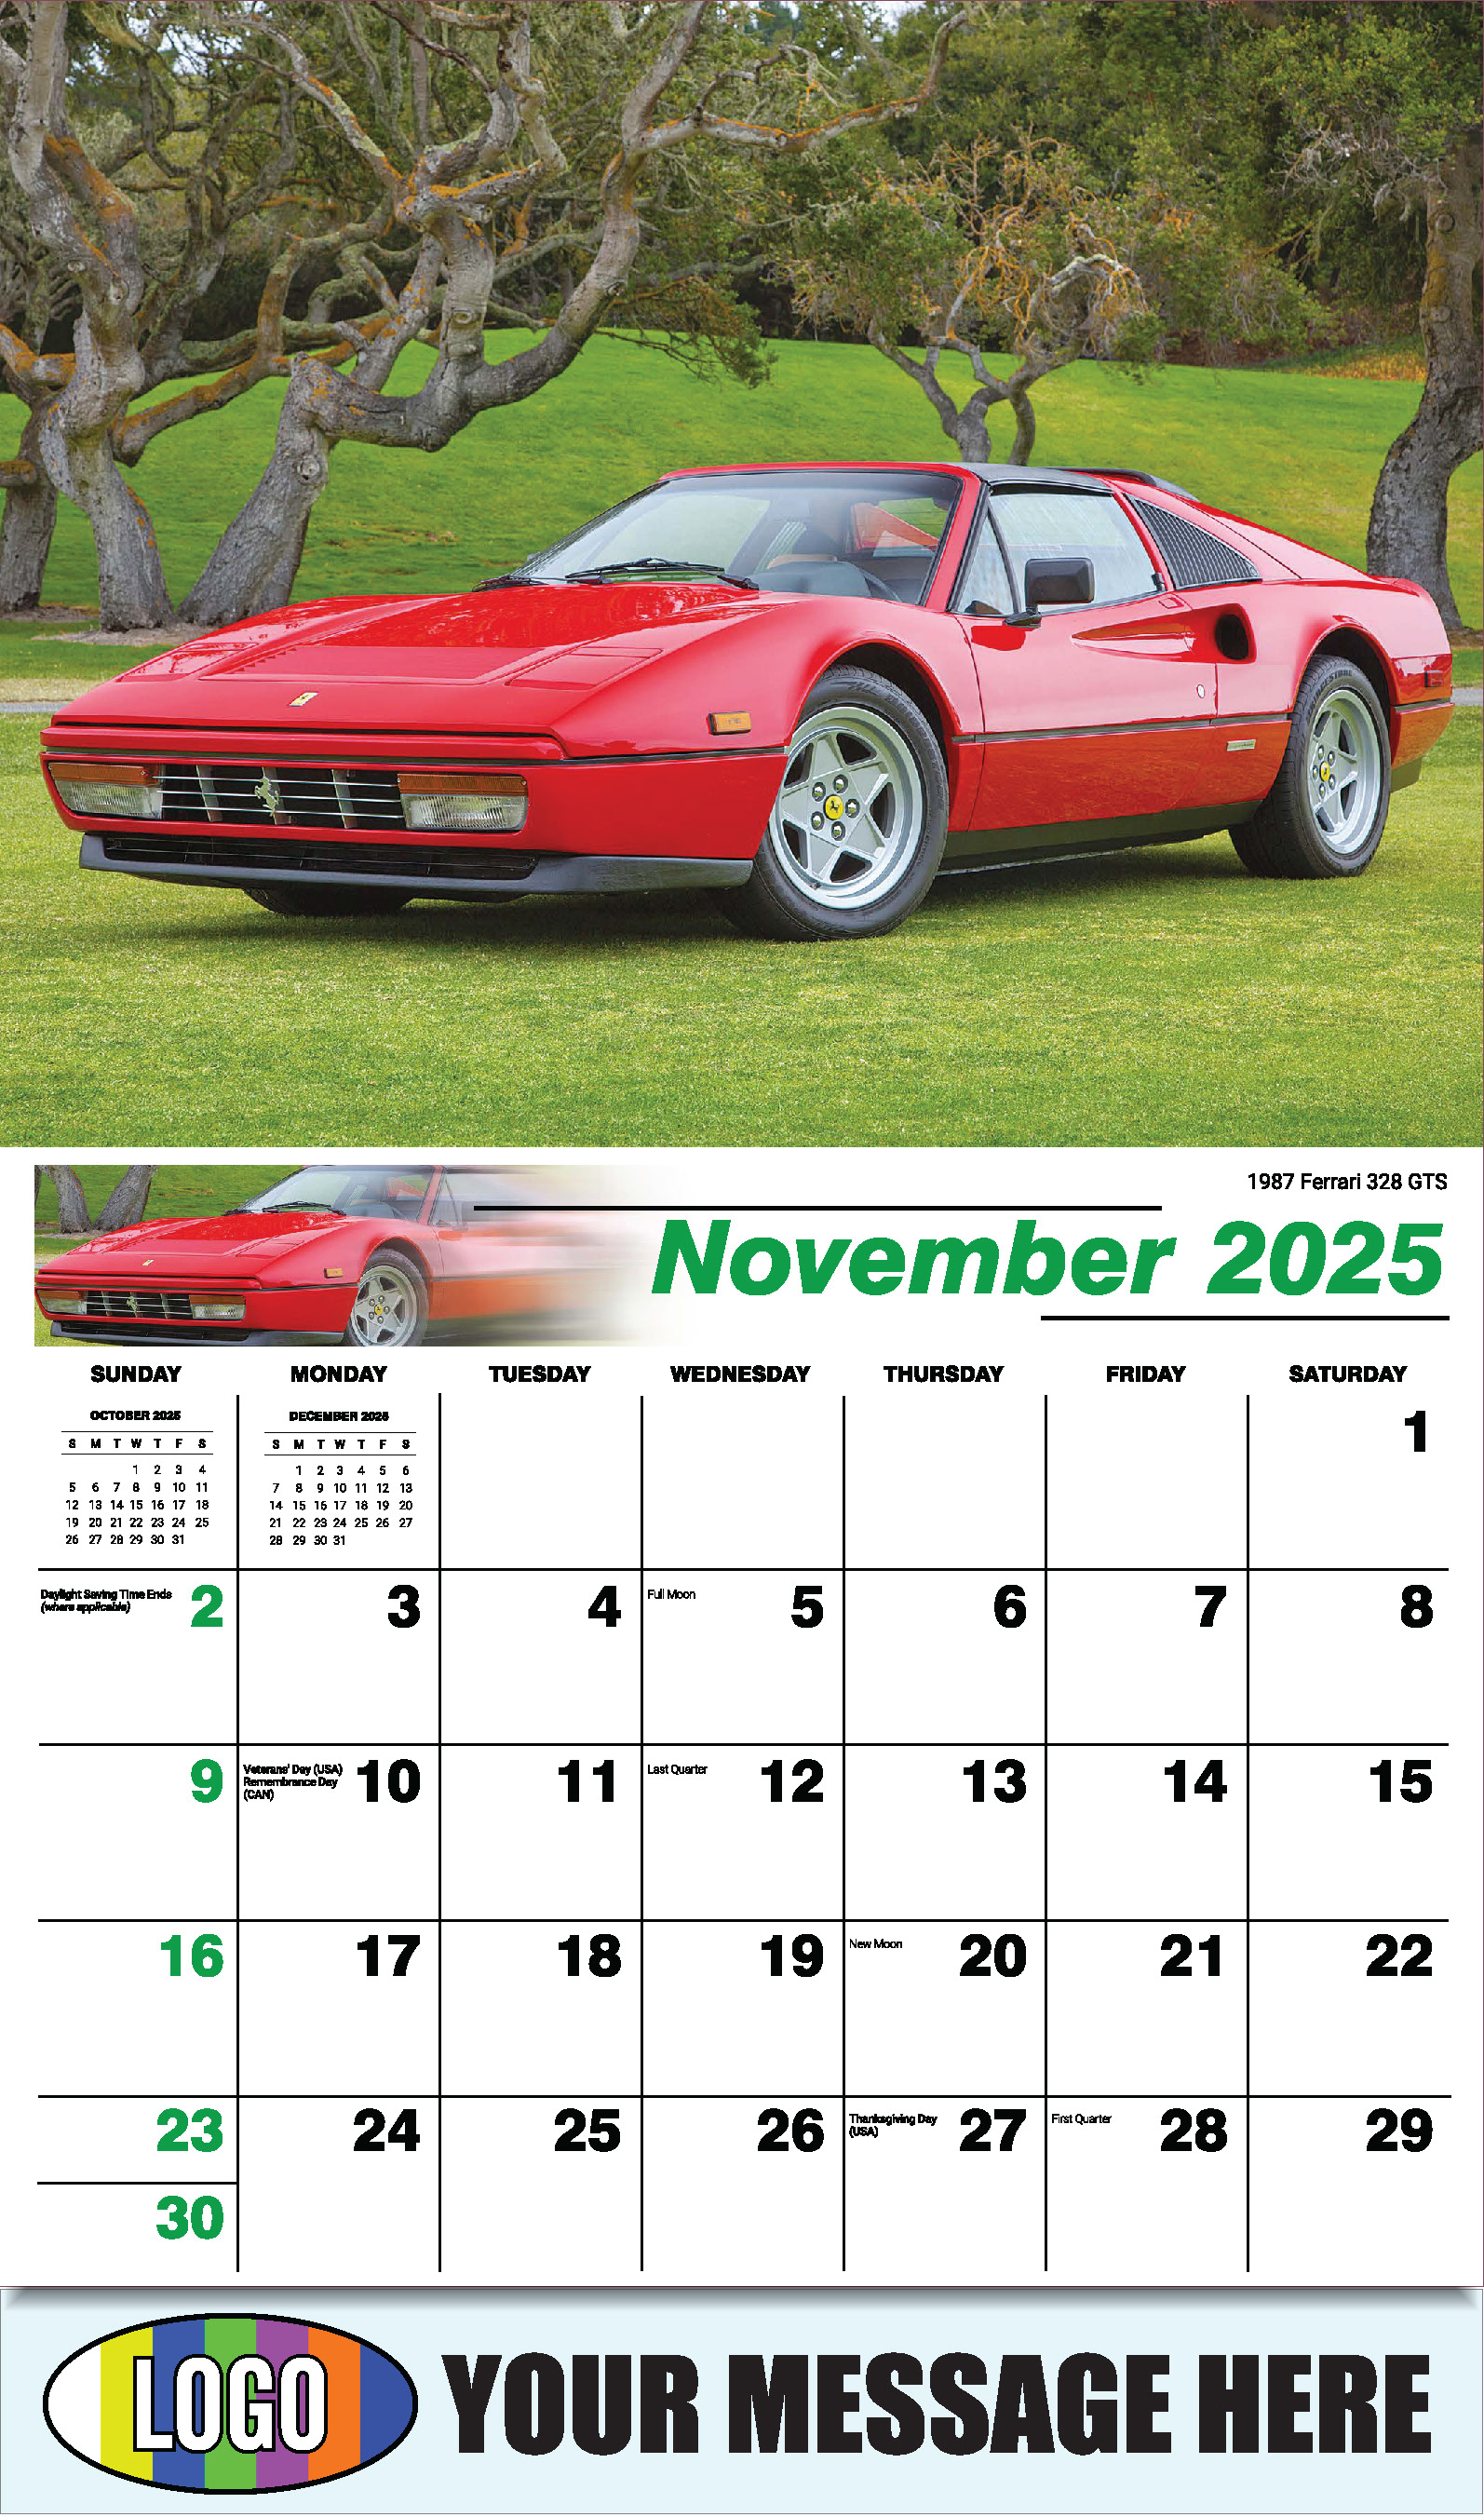 Classic Cars 2025 Automotive Business Promo Calendar - November